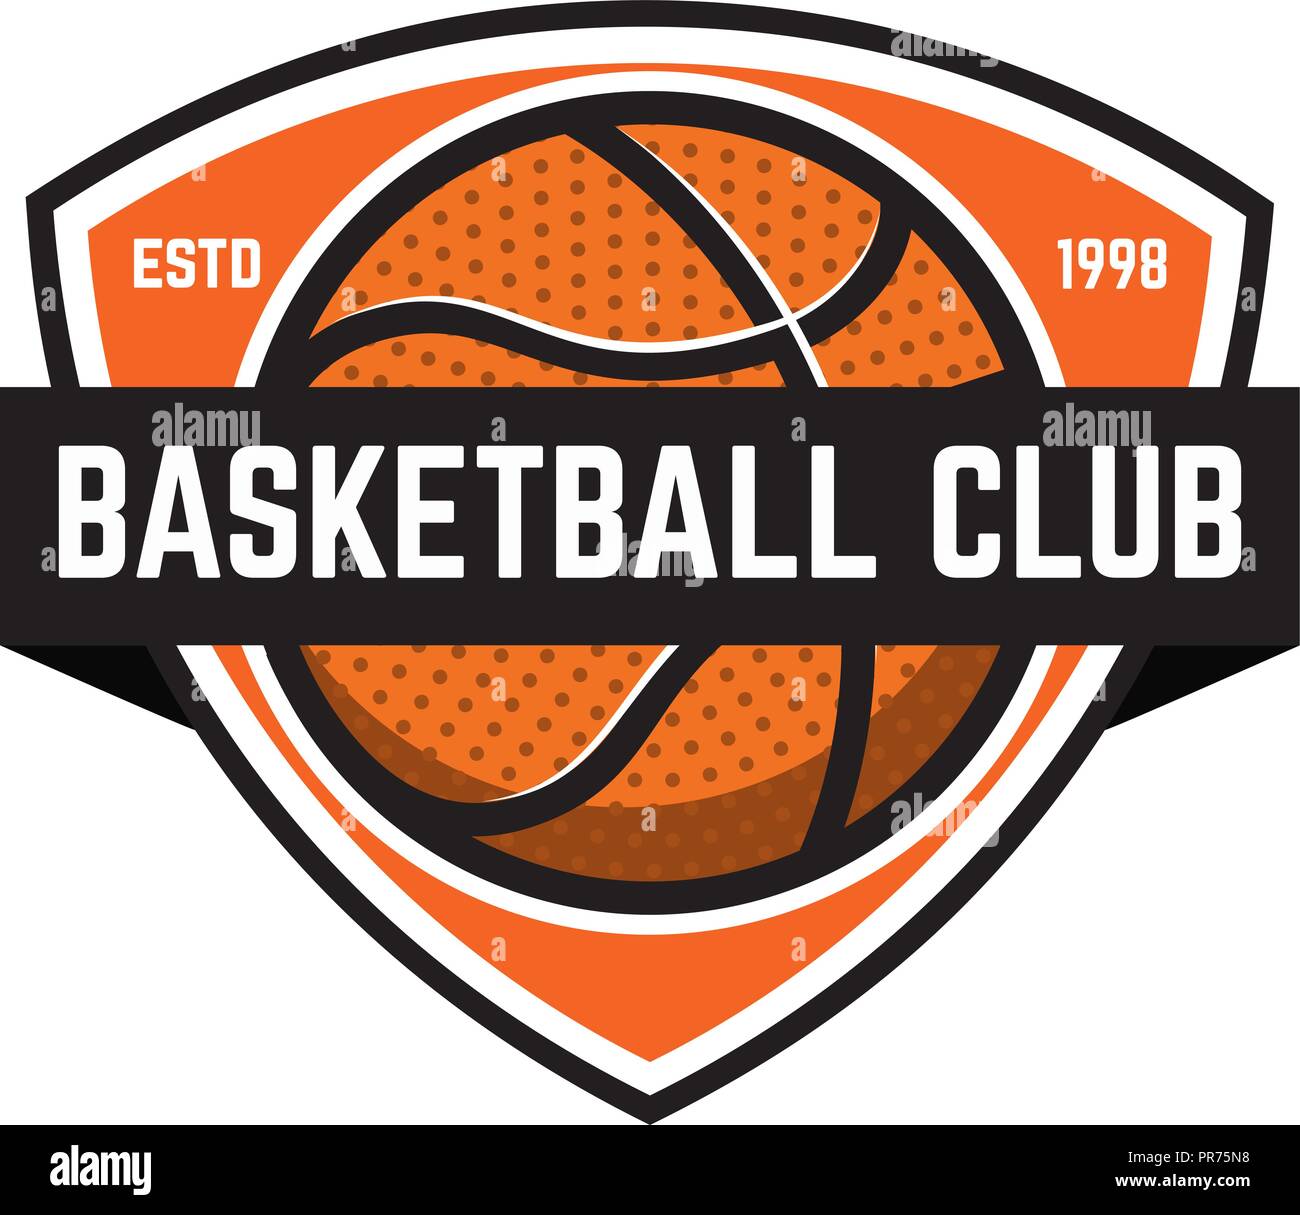 Basketball sport emblems. Design element for poster, logo, label, emblem,  sign, t shirt. Vector illustration Stock Vector Image & Art - Alamy